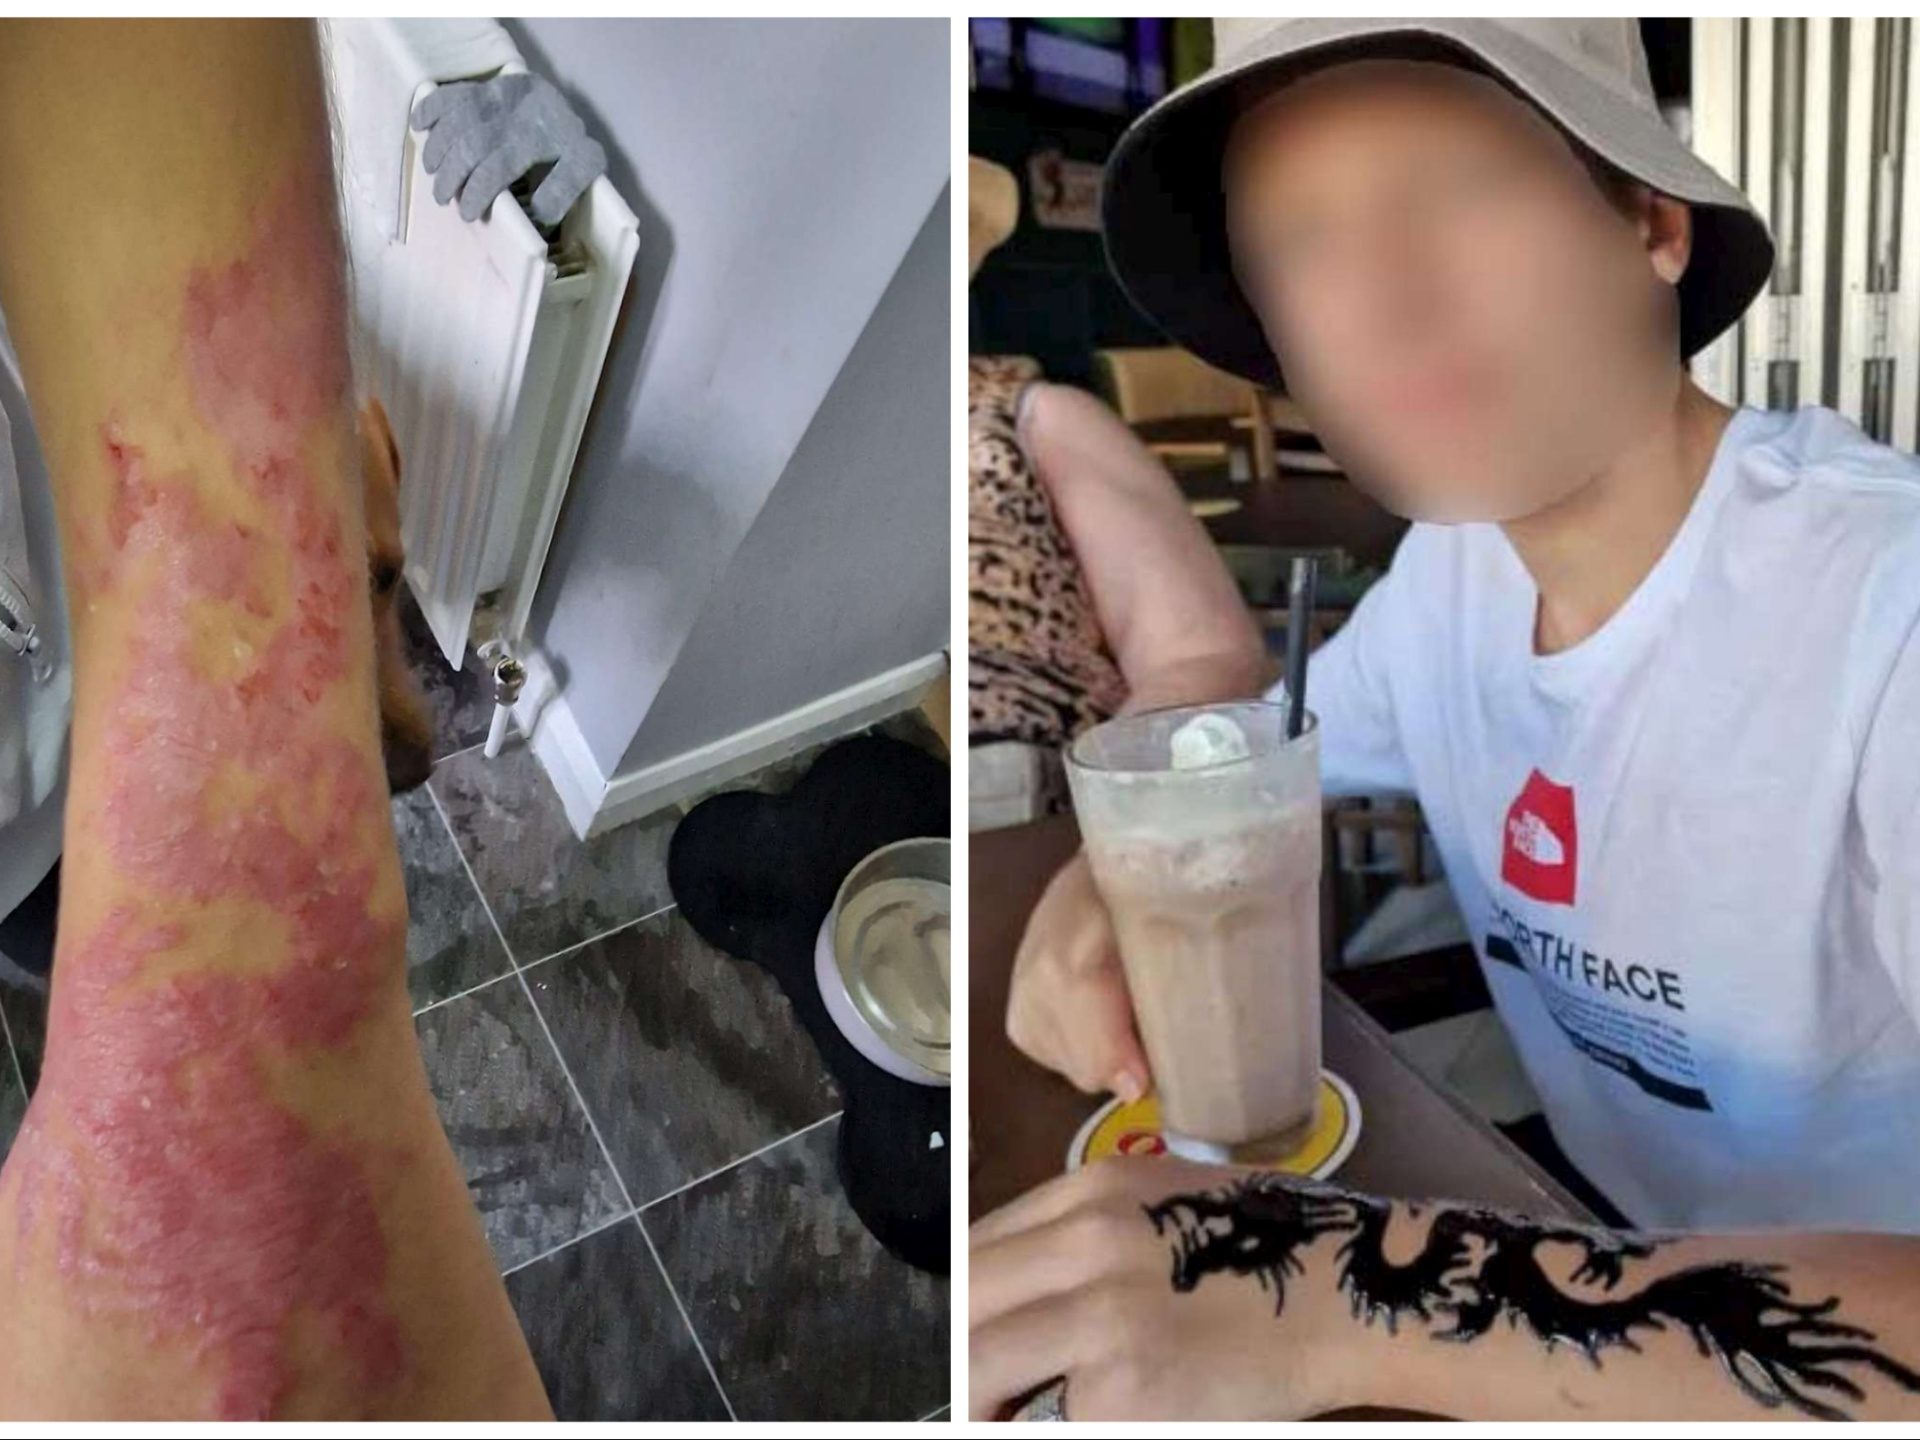 Kind lässt sich im Urlaub Henna-Tattoo tätowieren: Verbrennungen am Arm